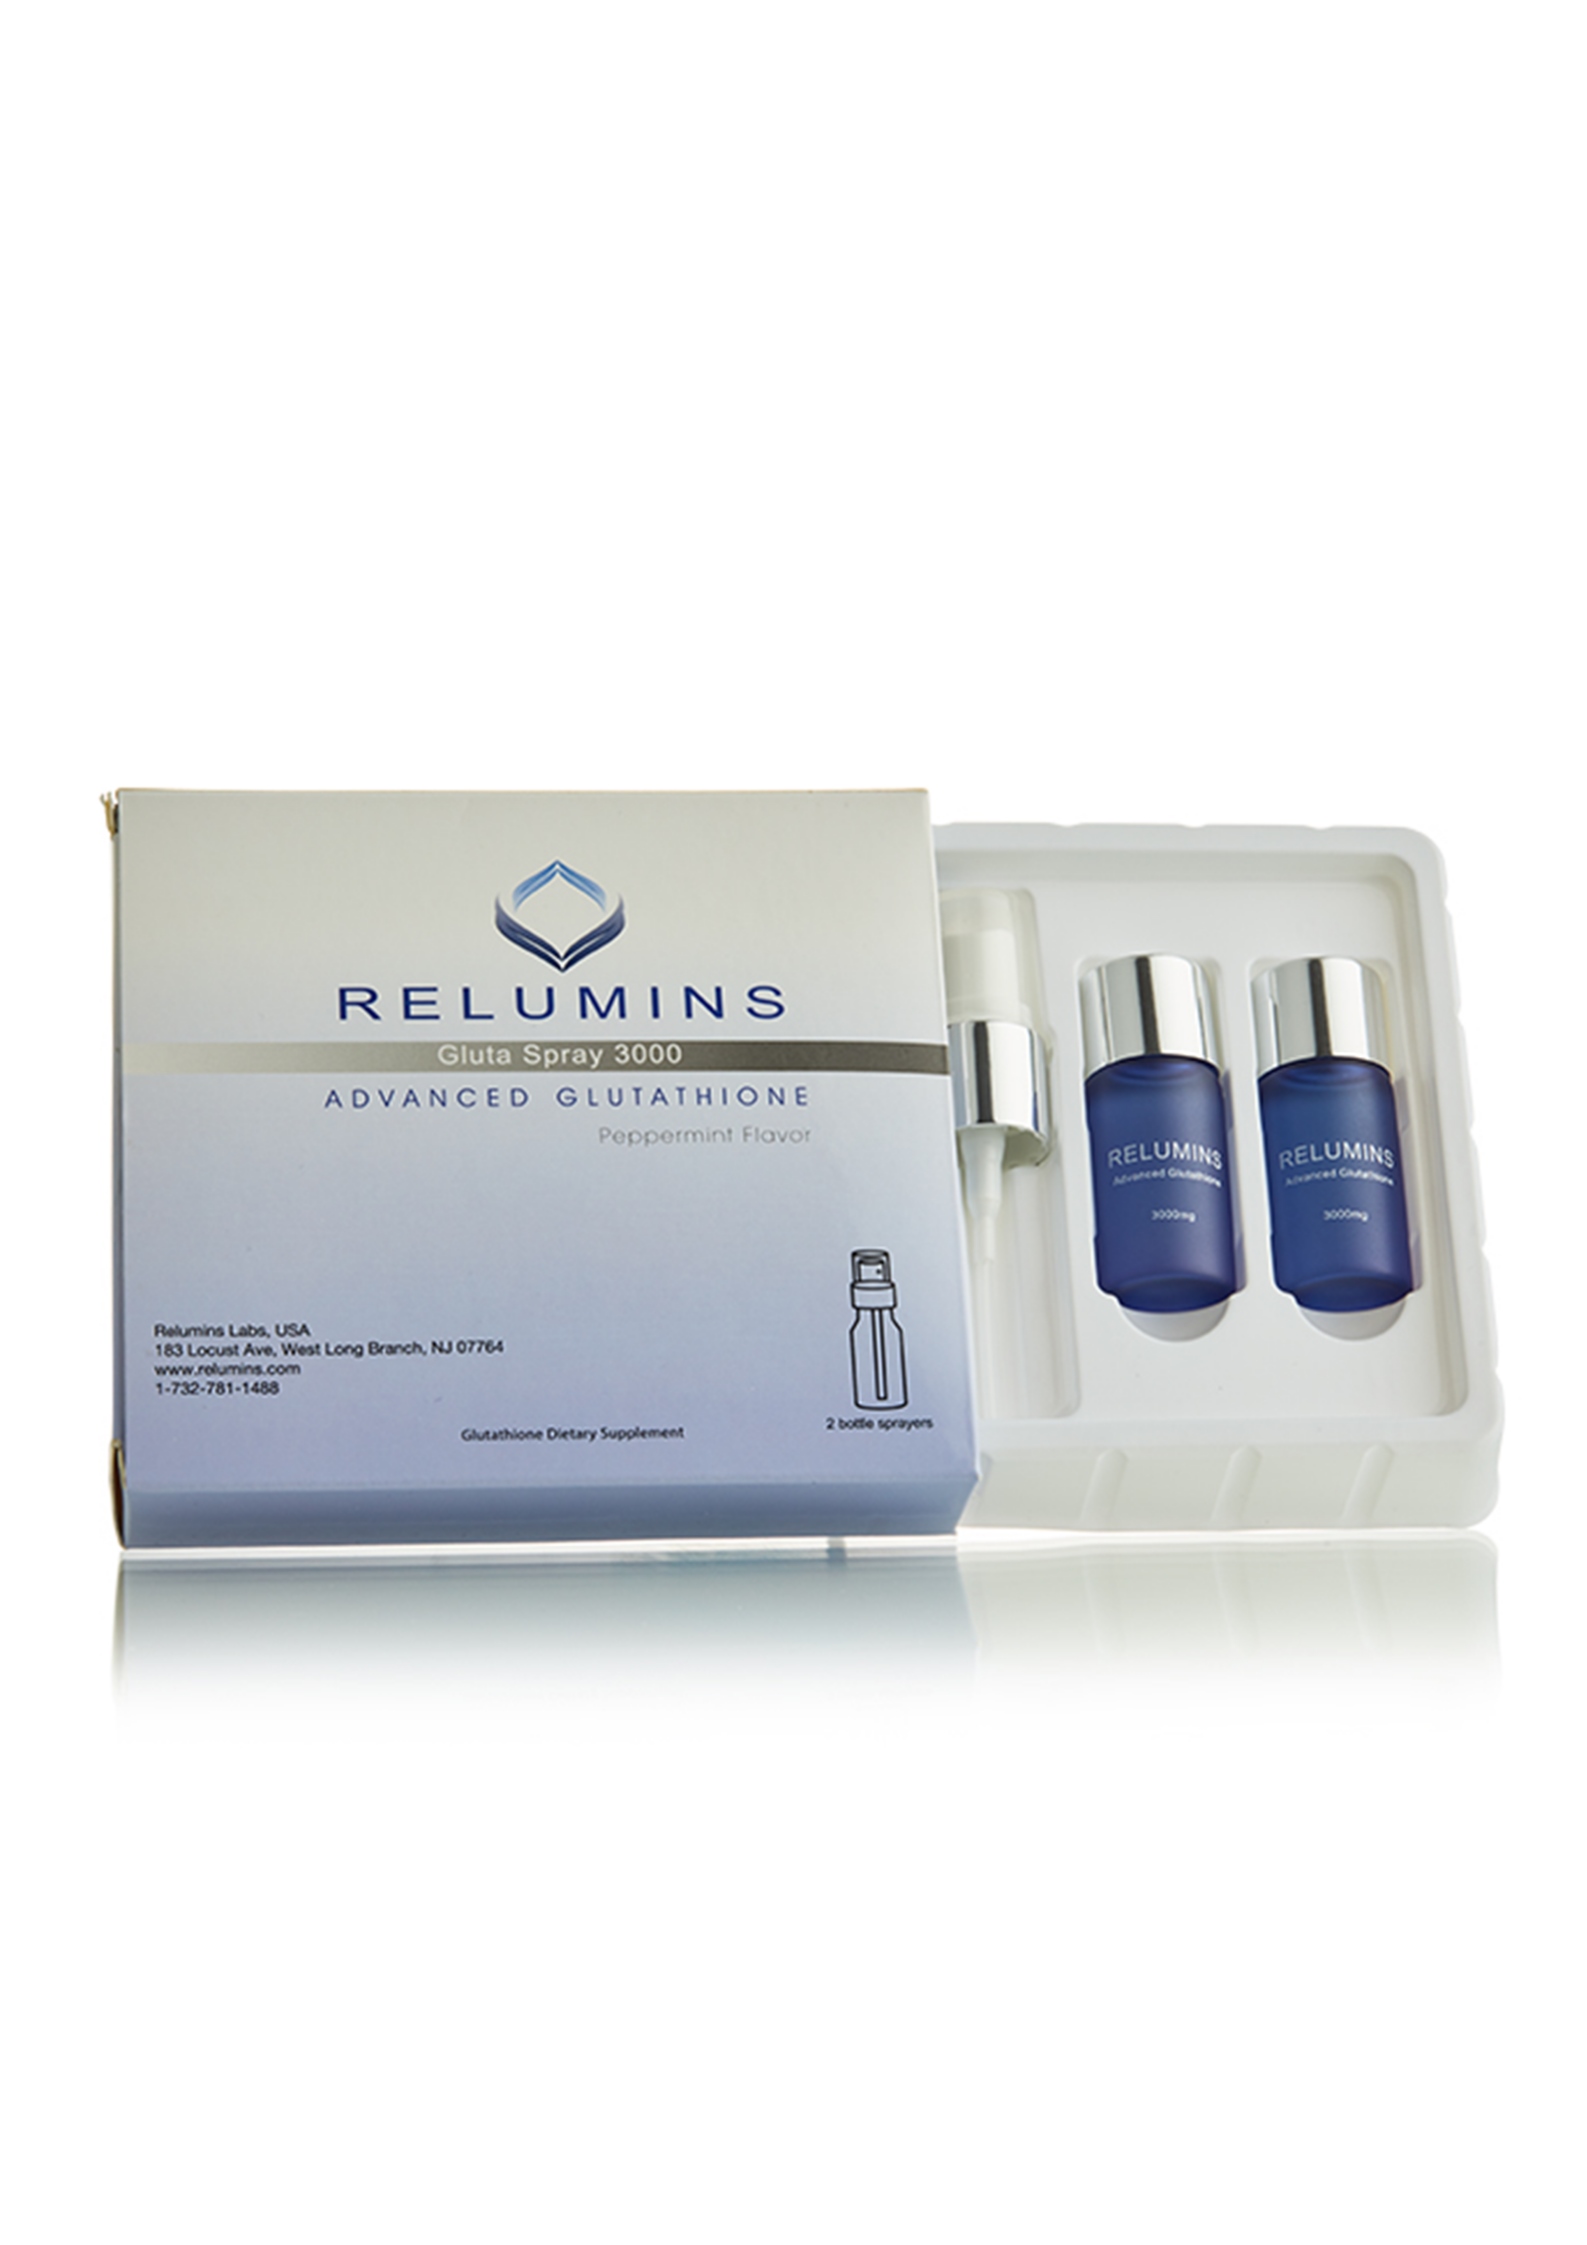 Relumins Gluta Spray 3000 Oral Glutathione Formula